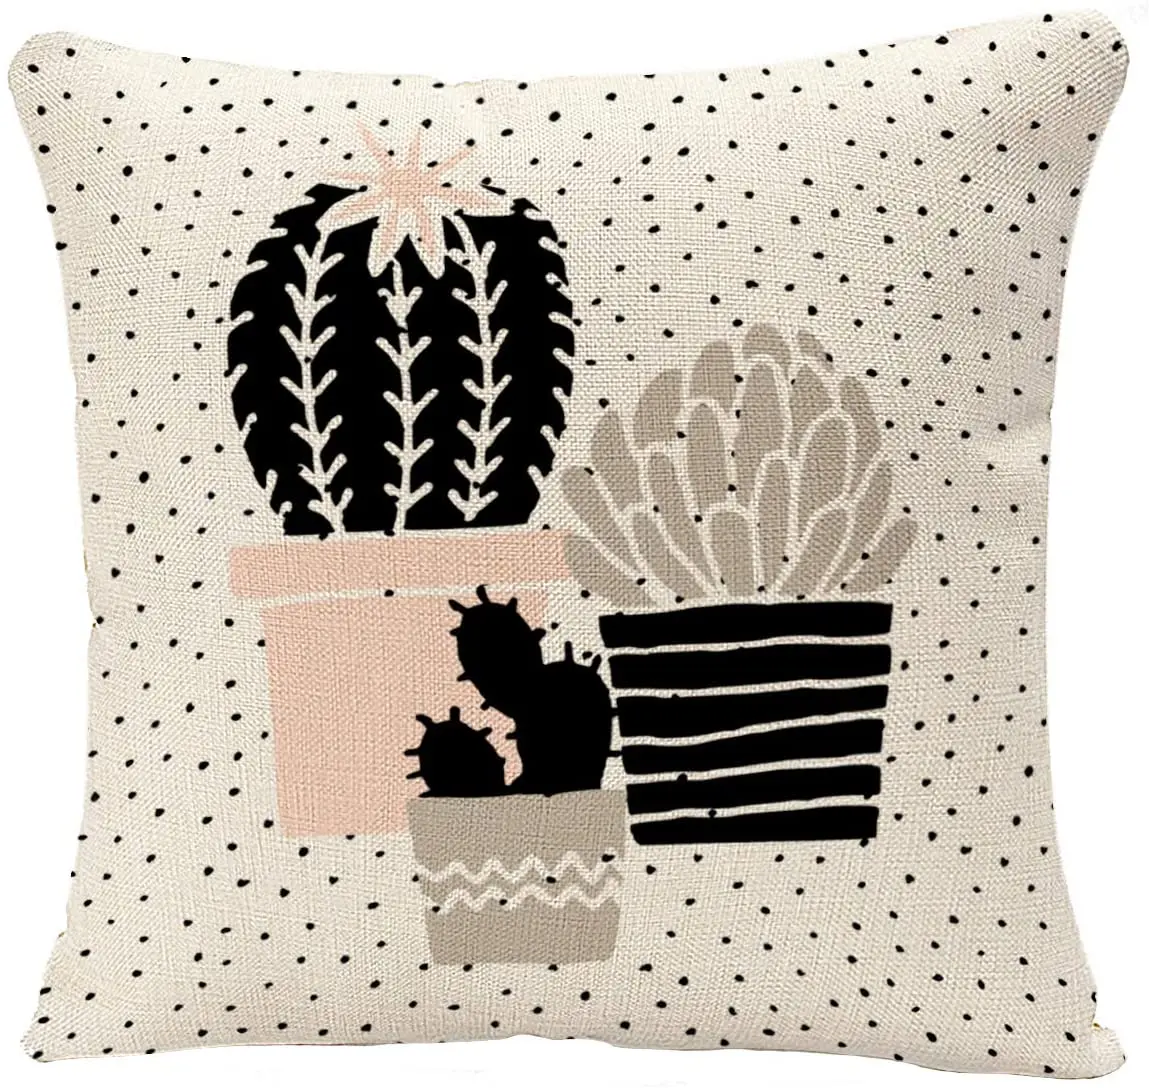 

Подушка в скандинавском стиле с изображением абстрактных кактусов и растений в черном, белом, серо-коричневом и пастельно-розовом цветах, с...